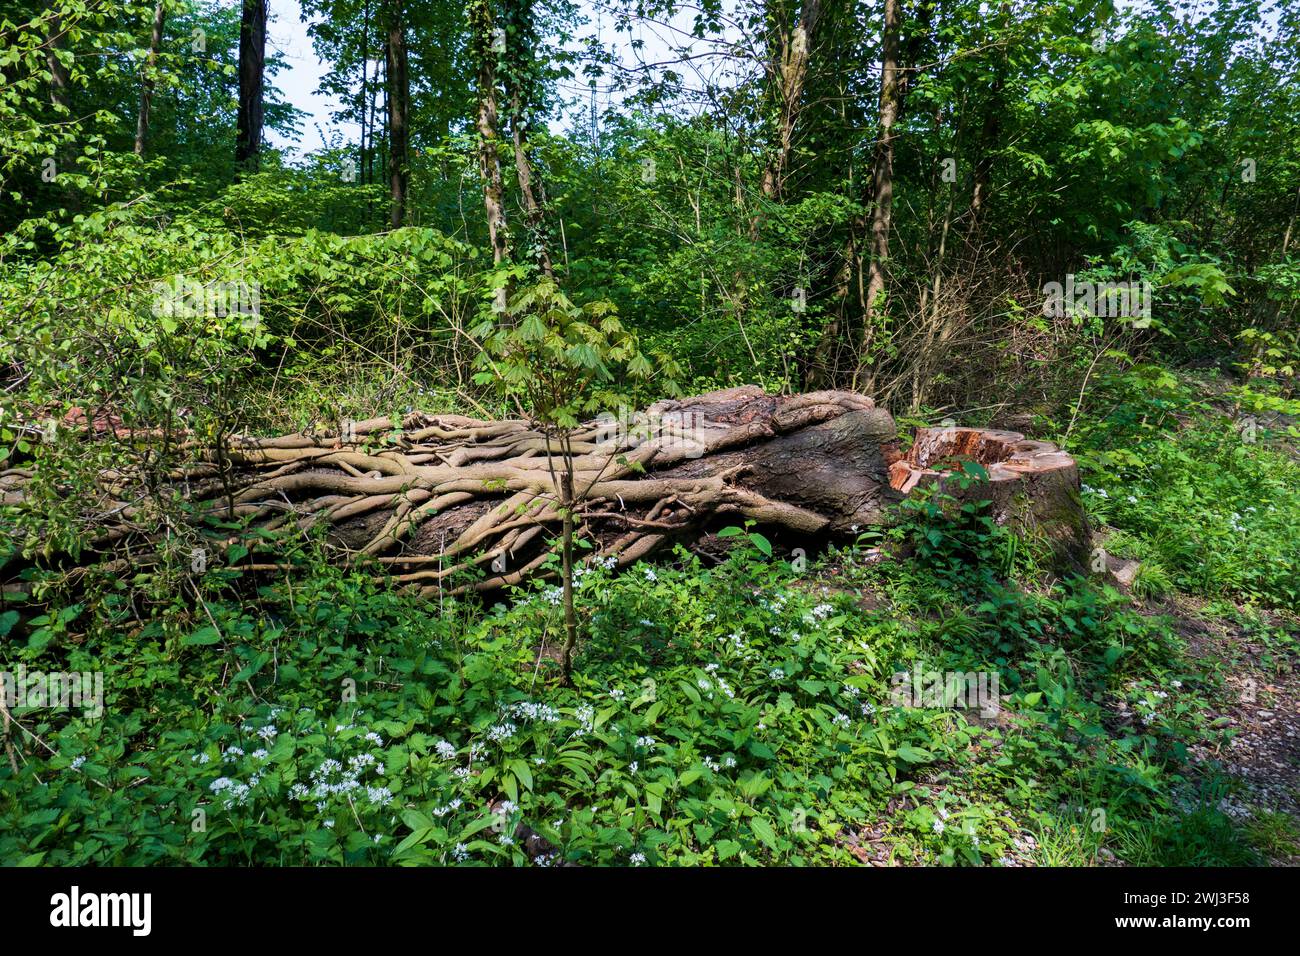 Umgestürzter Baum mit Austrieben und Lianen umwunden im Wald Foto Stock